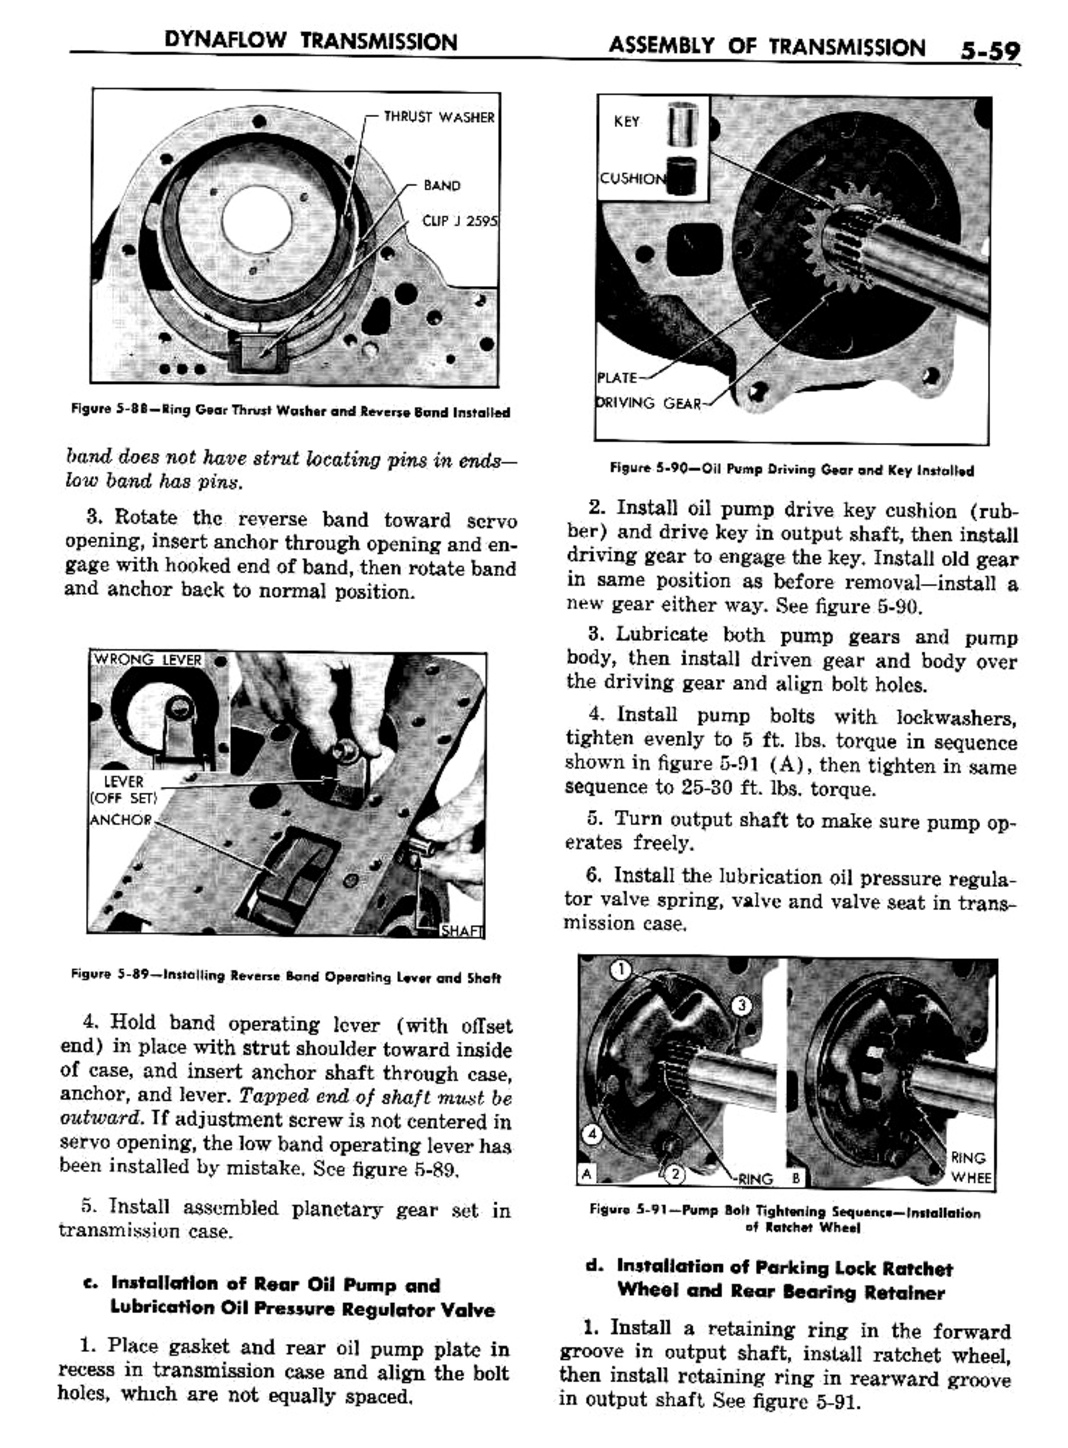 n_06 1957 Buick Shop Manual - Dynaflow-059-059.jpg